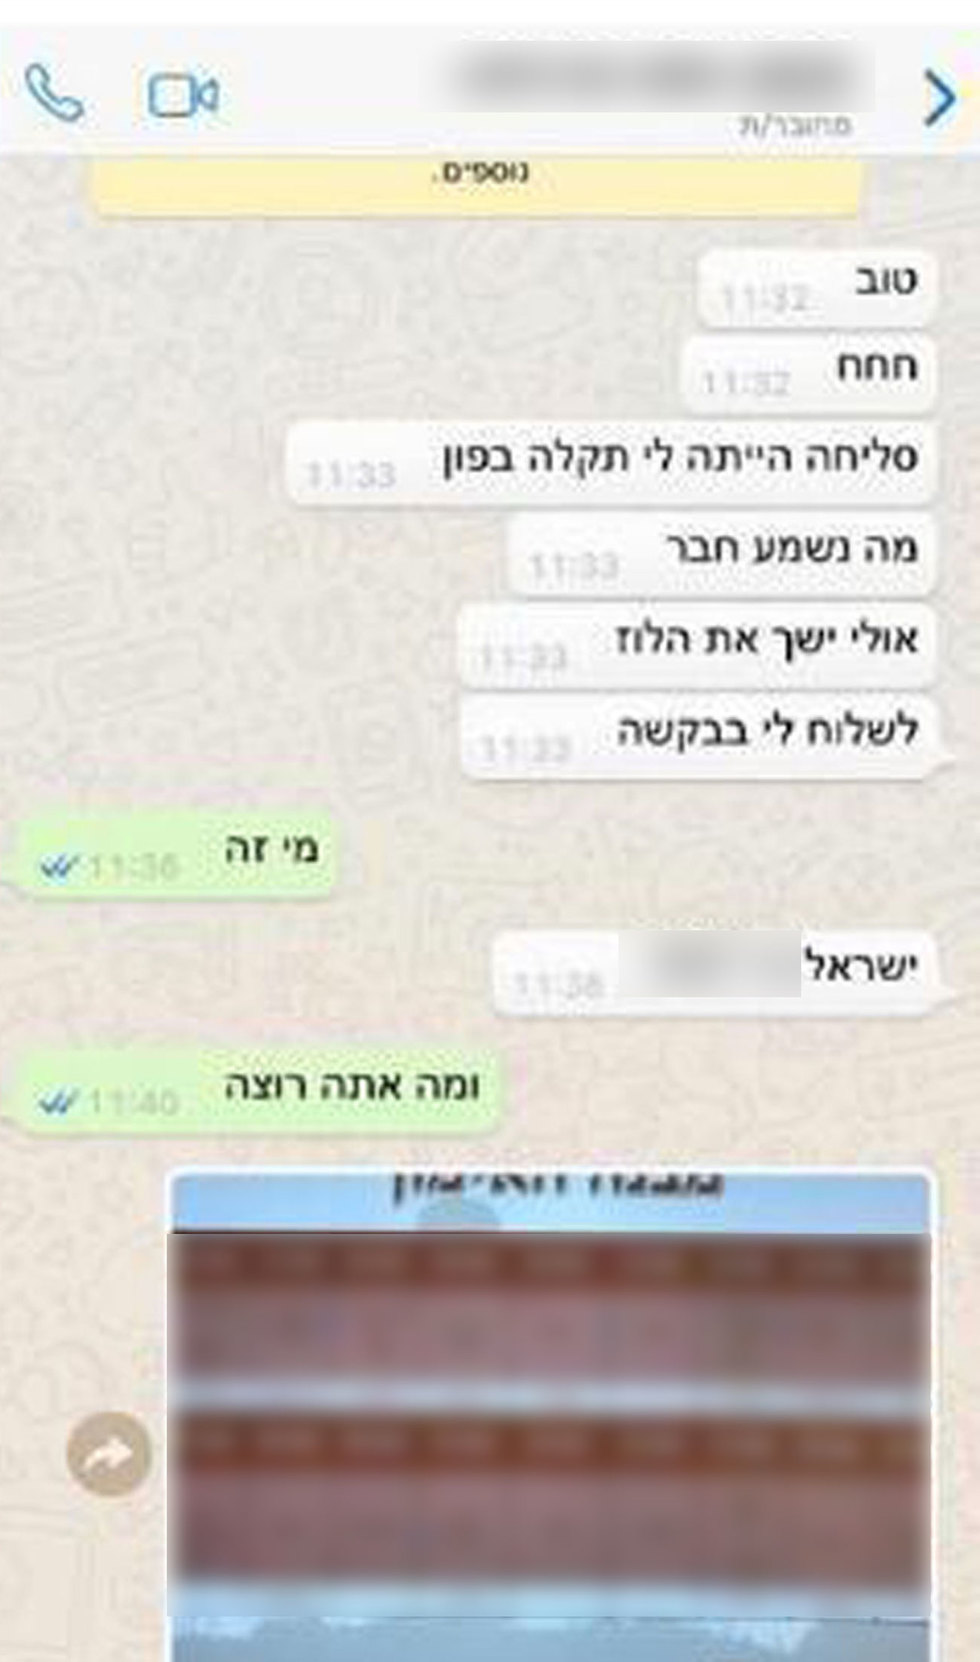 Переписка хакера ХАМАСа с израильским военным